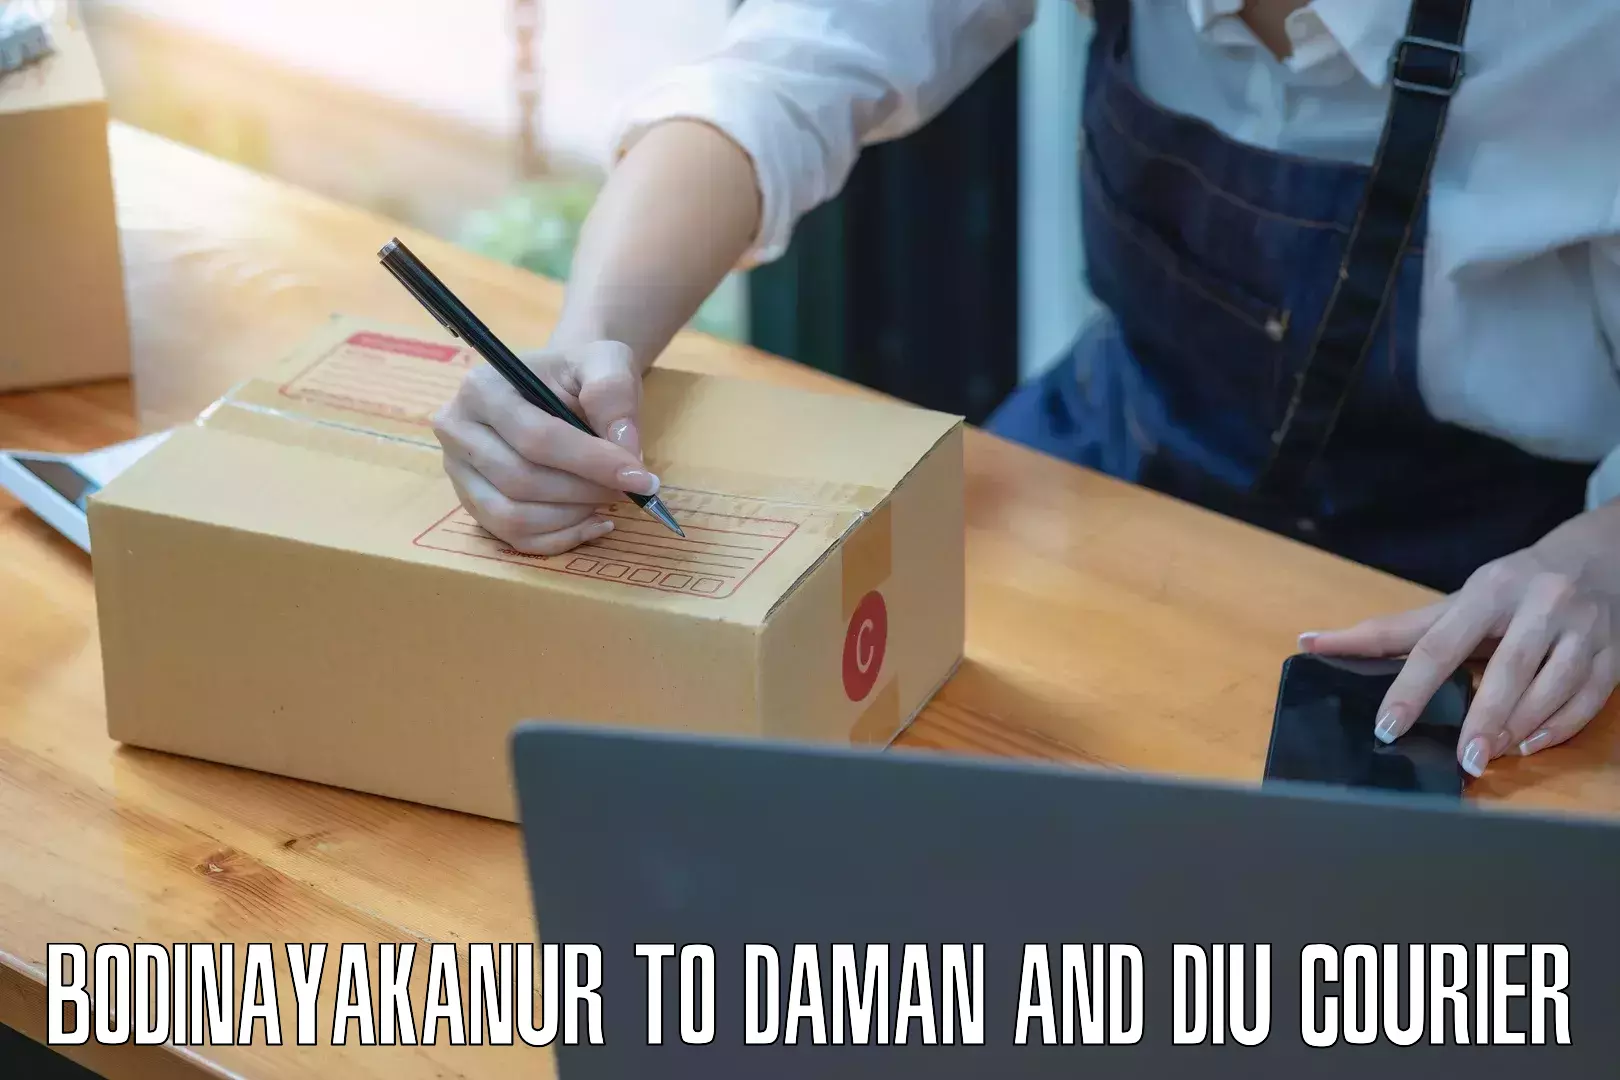 Quality courier partnerships Bodinayakanur to Daman and Diu